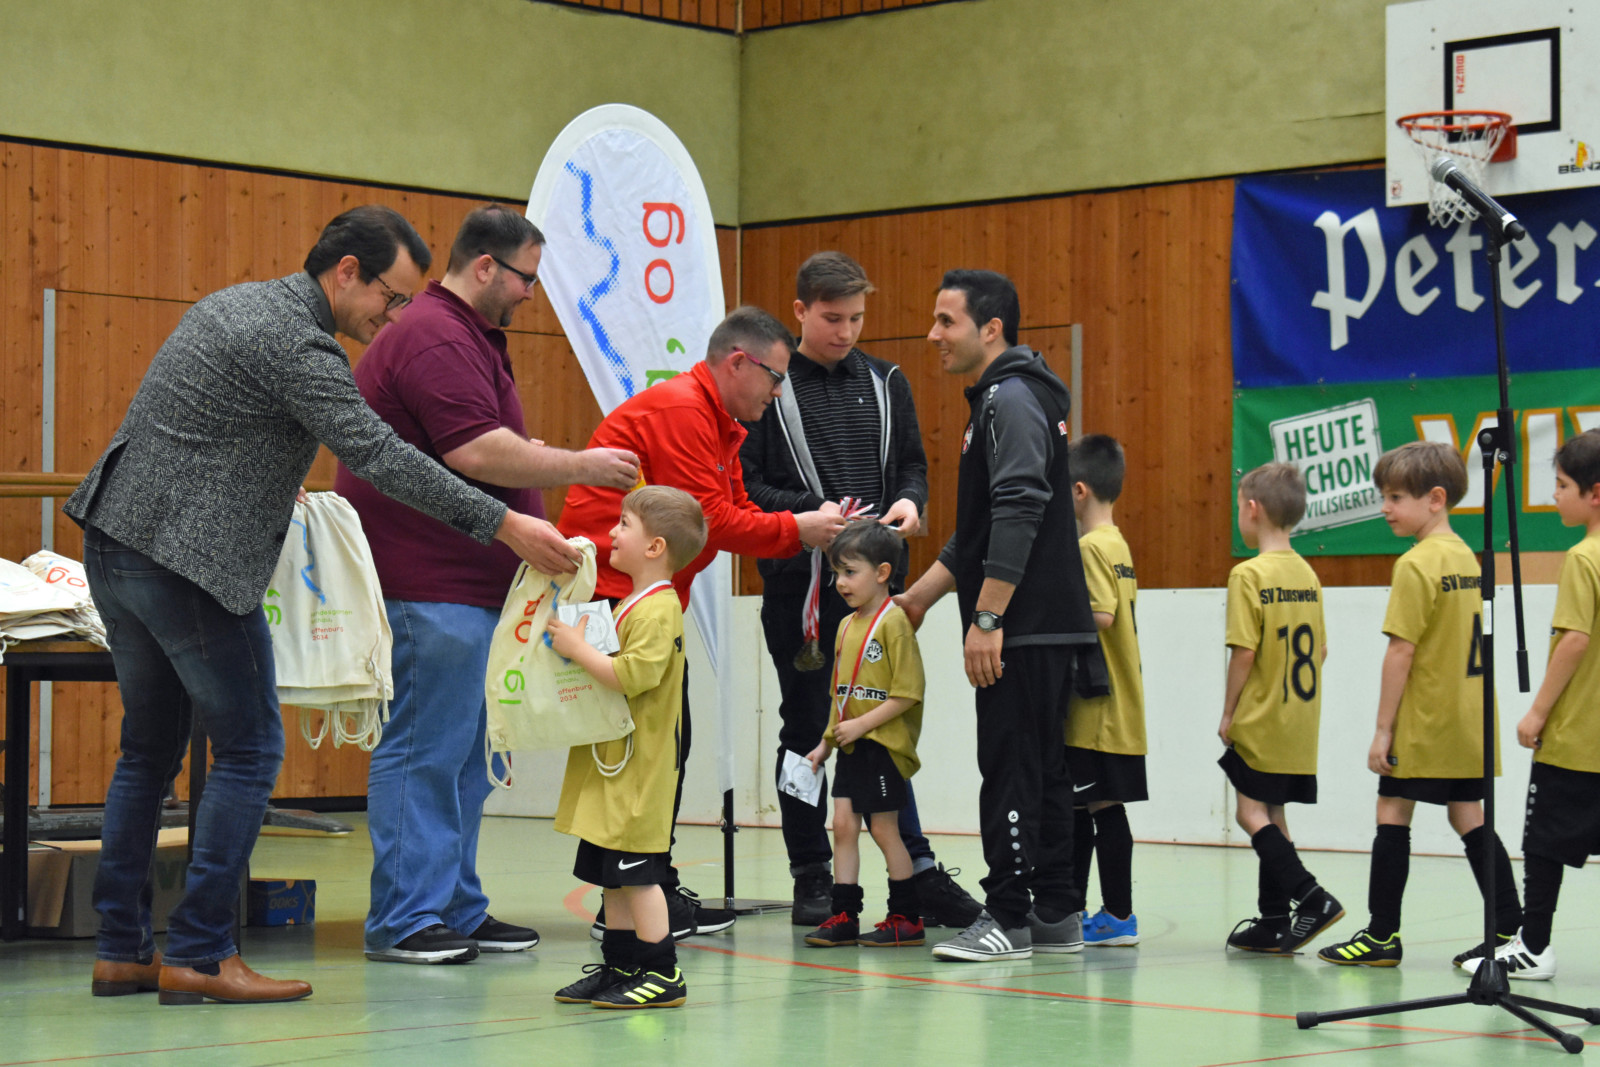 Neben den Medaillen und einer kleinen Süßigkeit erhielten die Kinder auch LG OG-Beutel von Oberbürgermeister Marco Steffens. Foto: Dennis Suhm